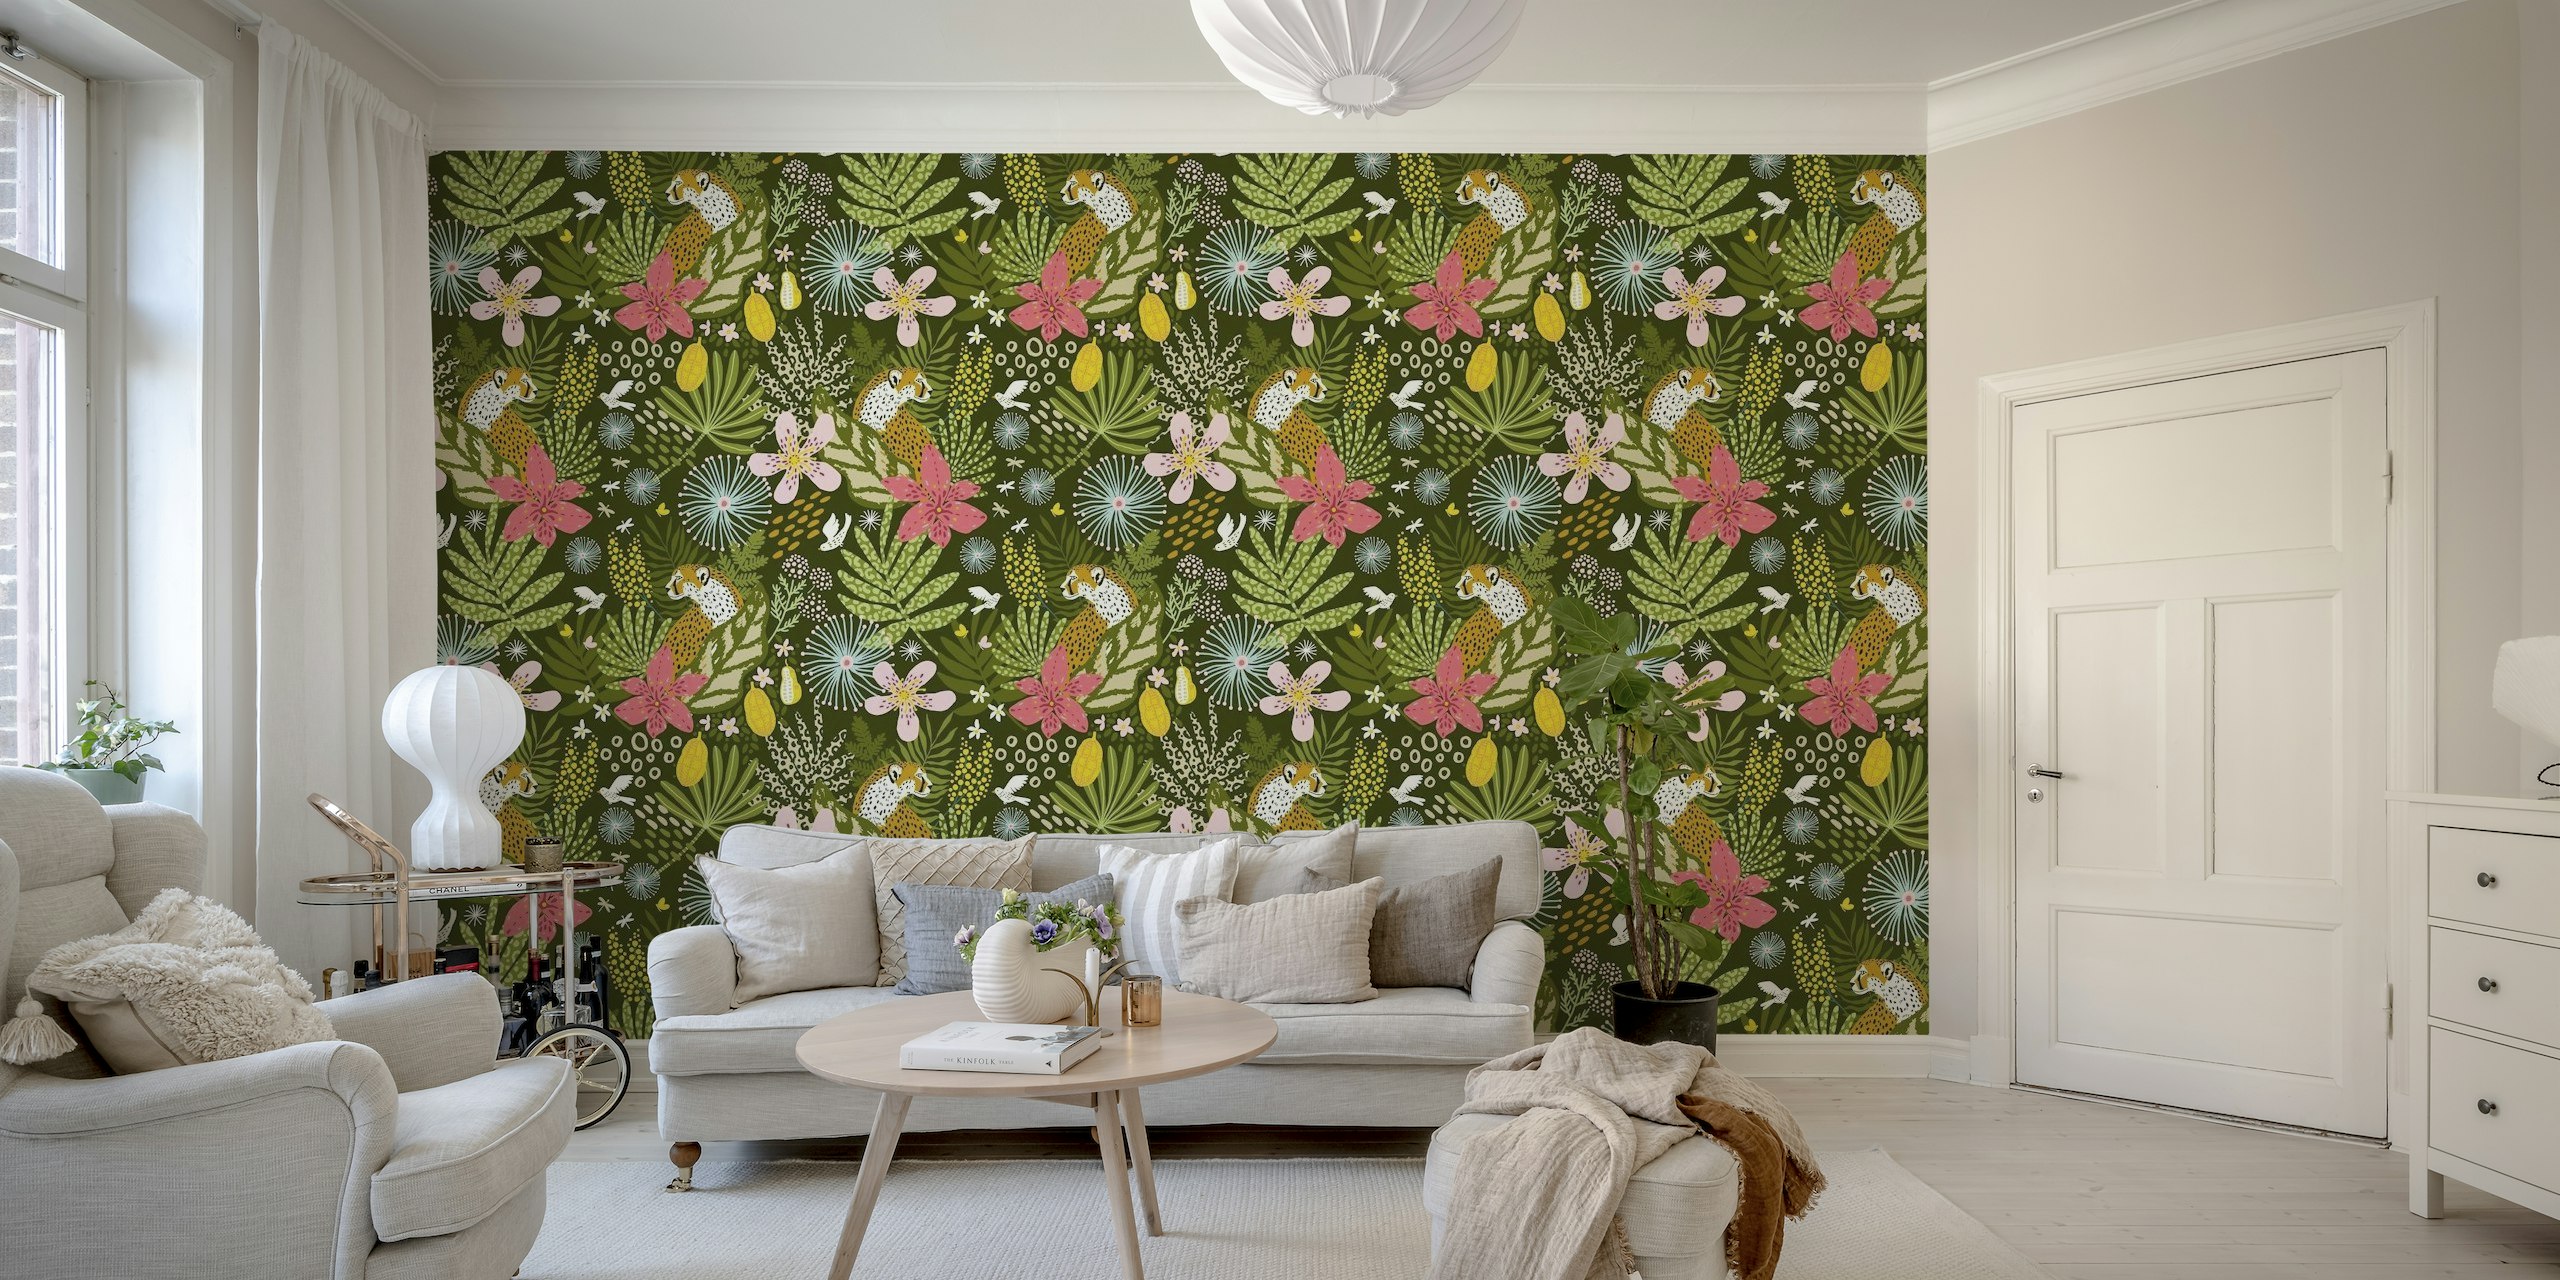 Fotomural vinílico de parede com padrão de chitas e flores tropicais para interiores